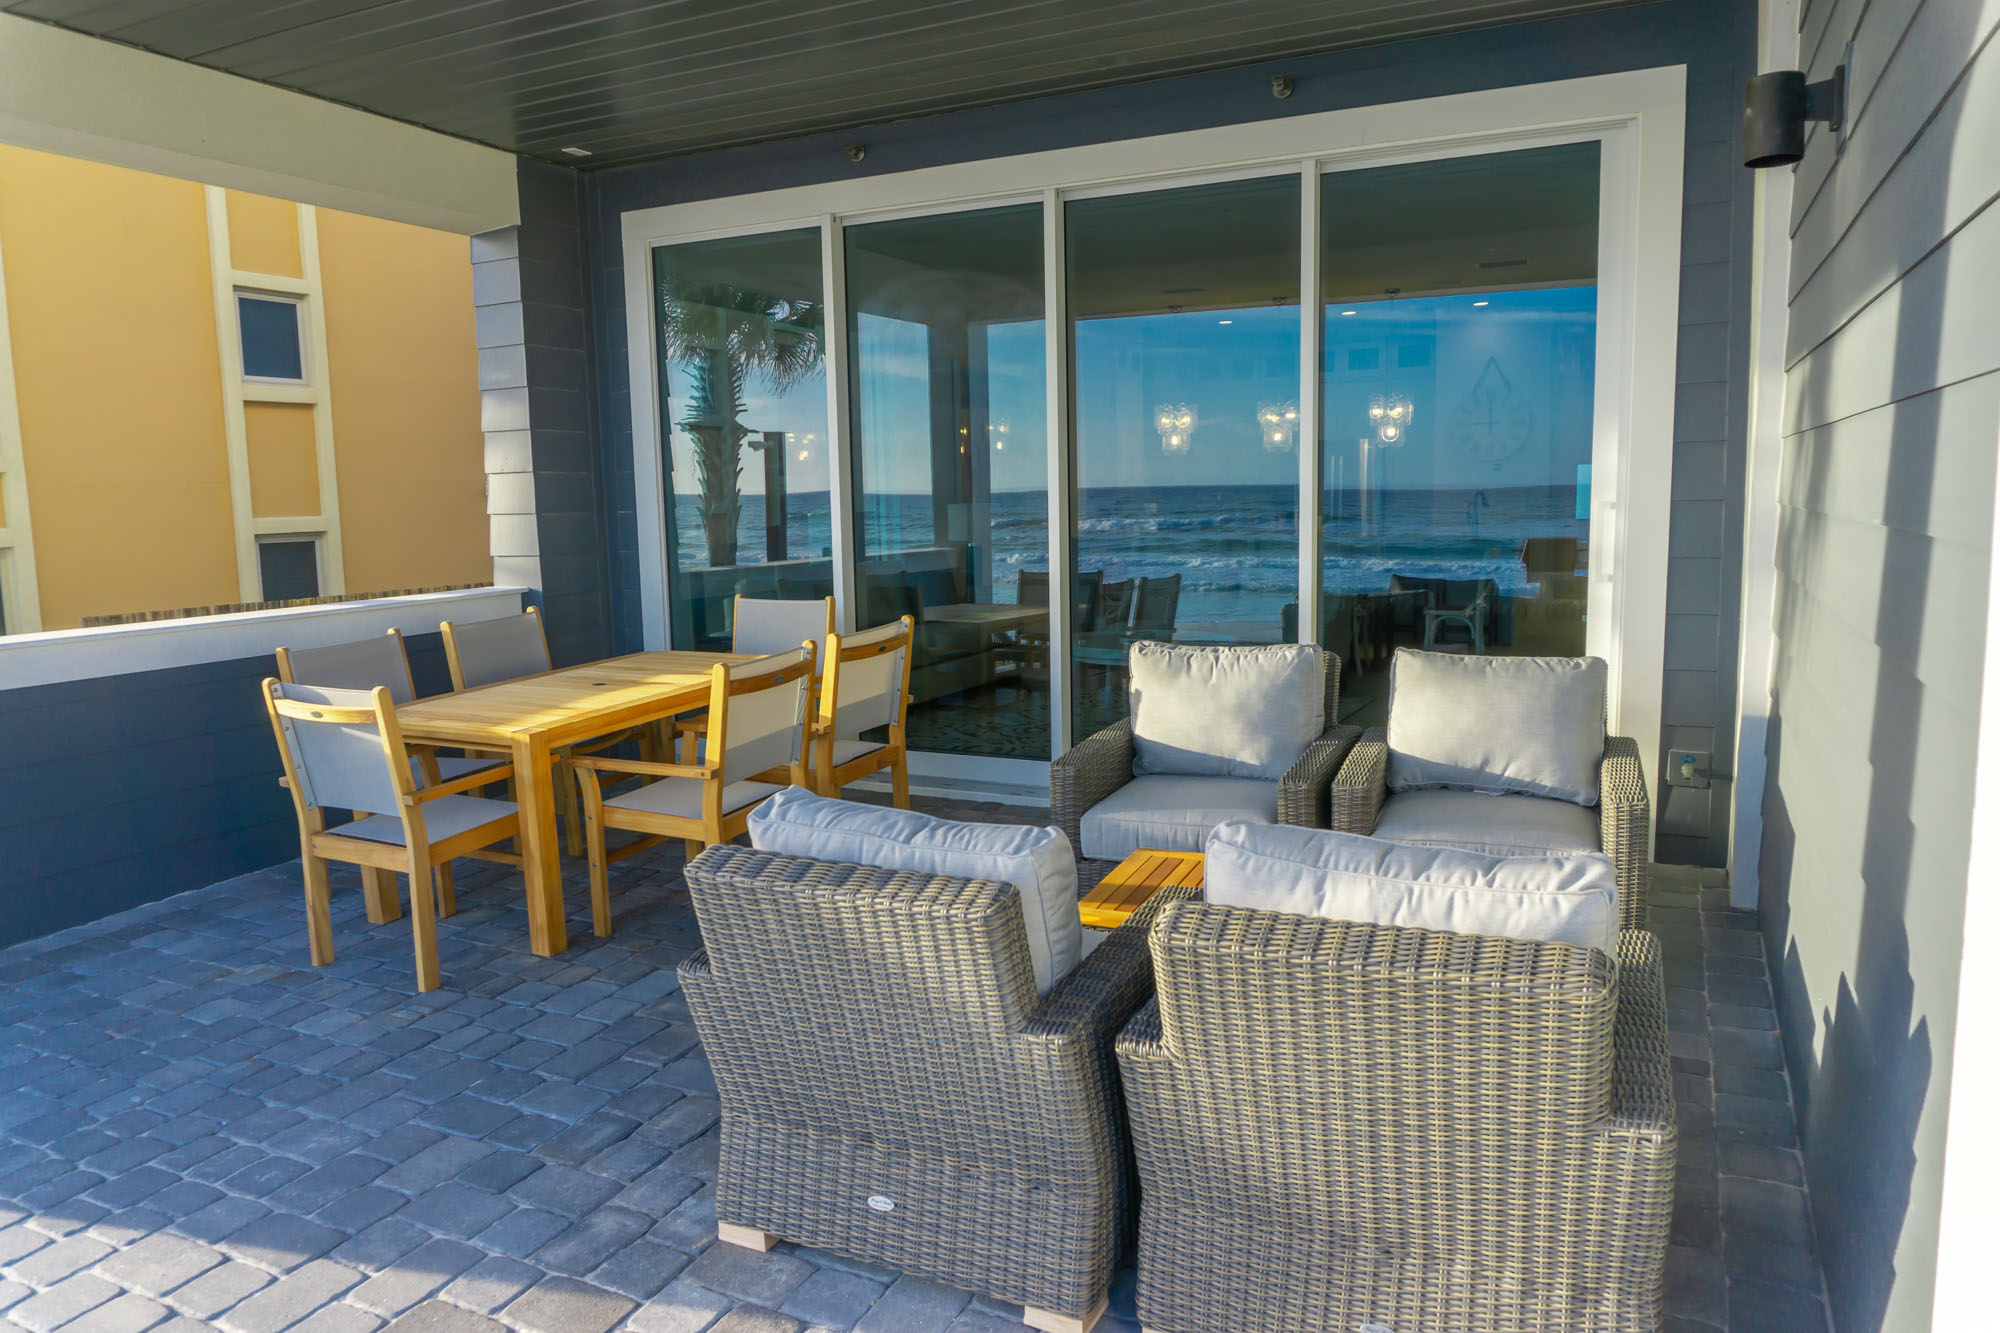 Crystal Clear (Henderson Beach Villas #1) Condo rental in Henderson Beach Villas in Destin Florida - #10